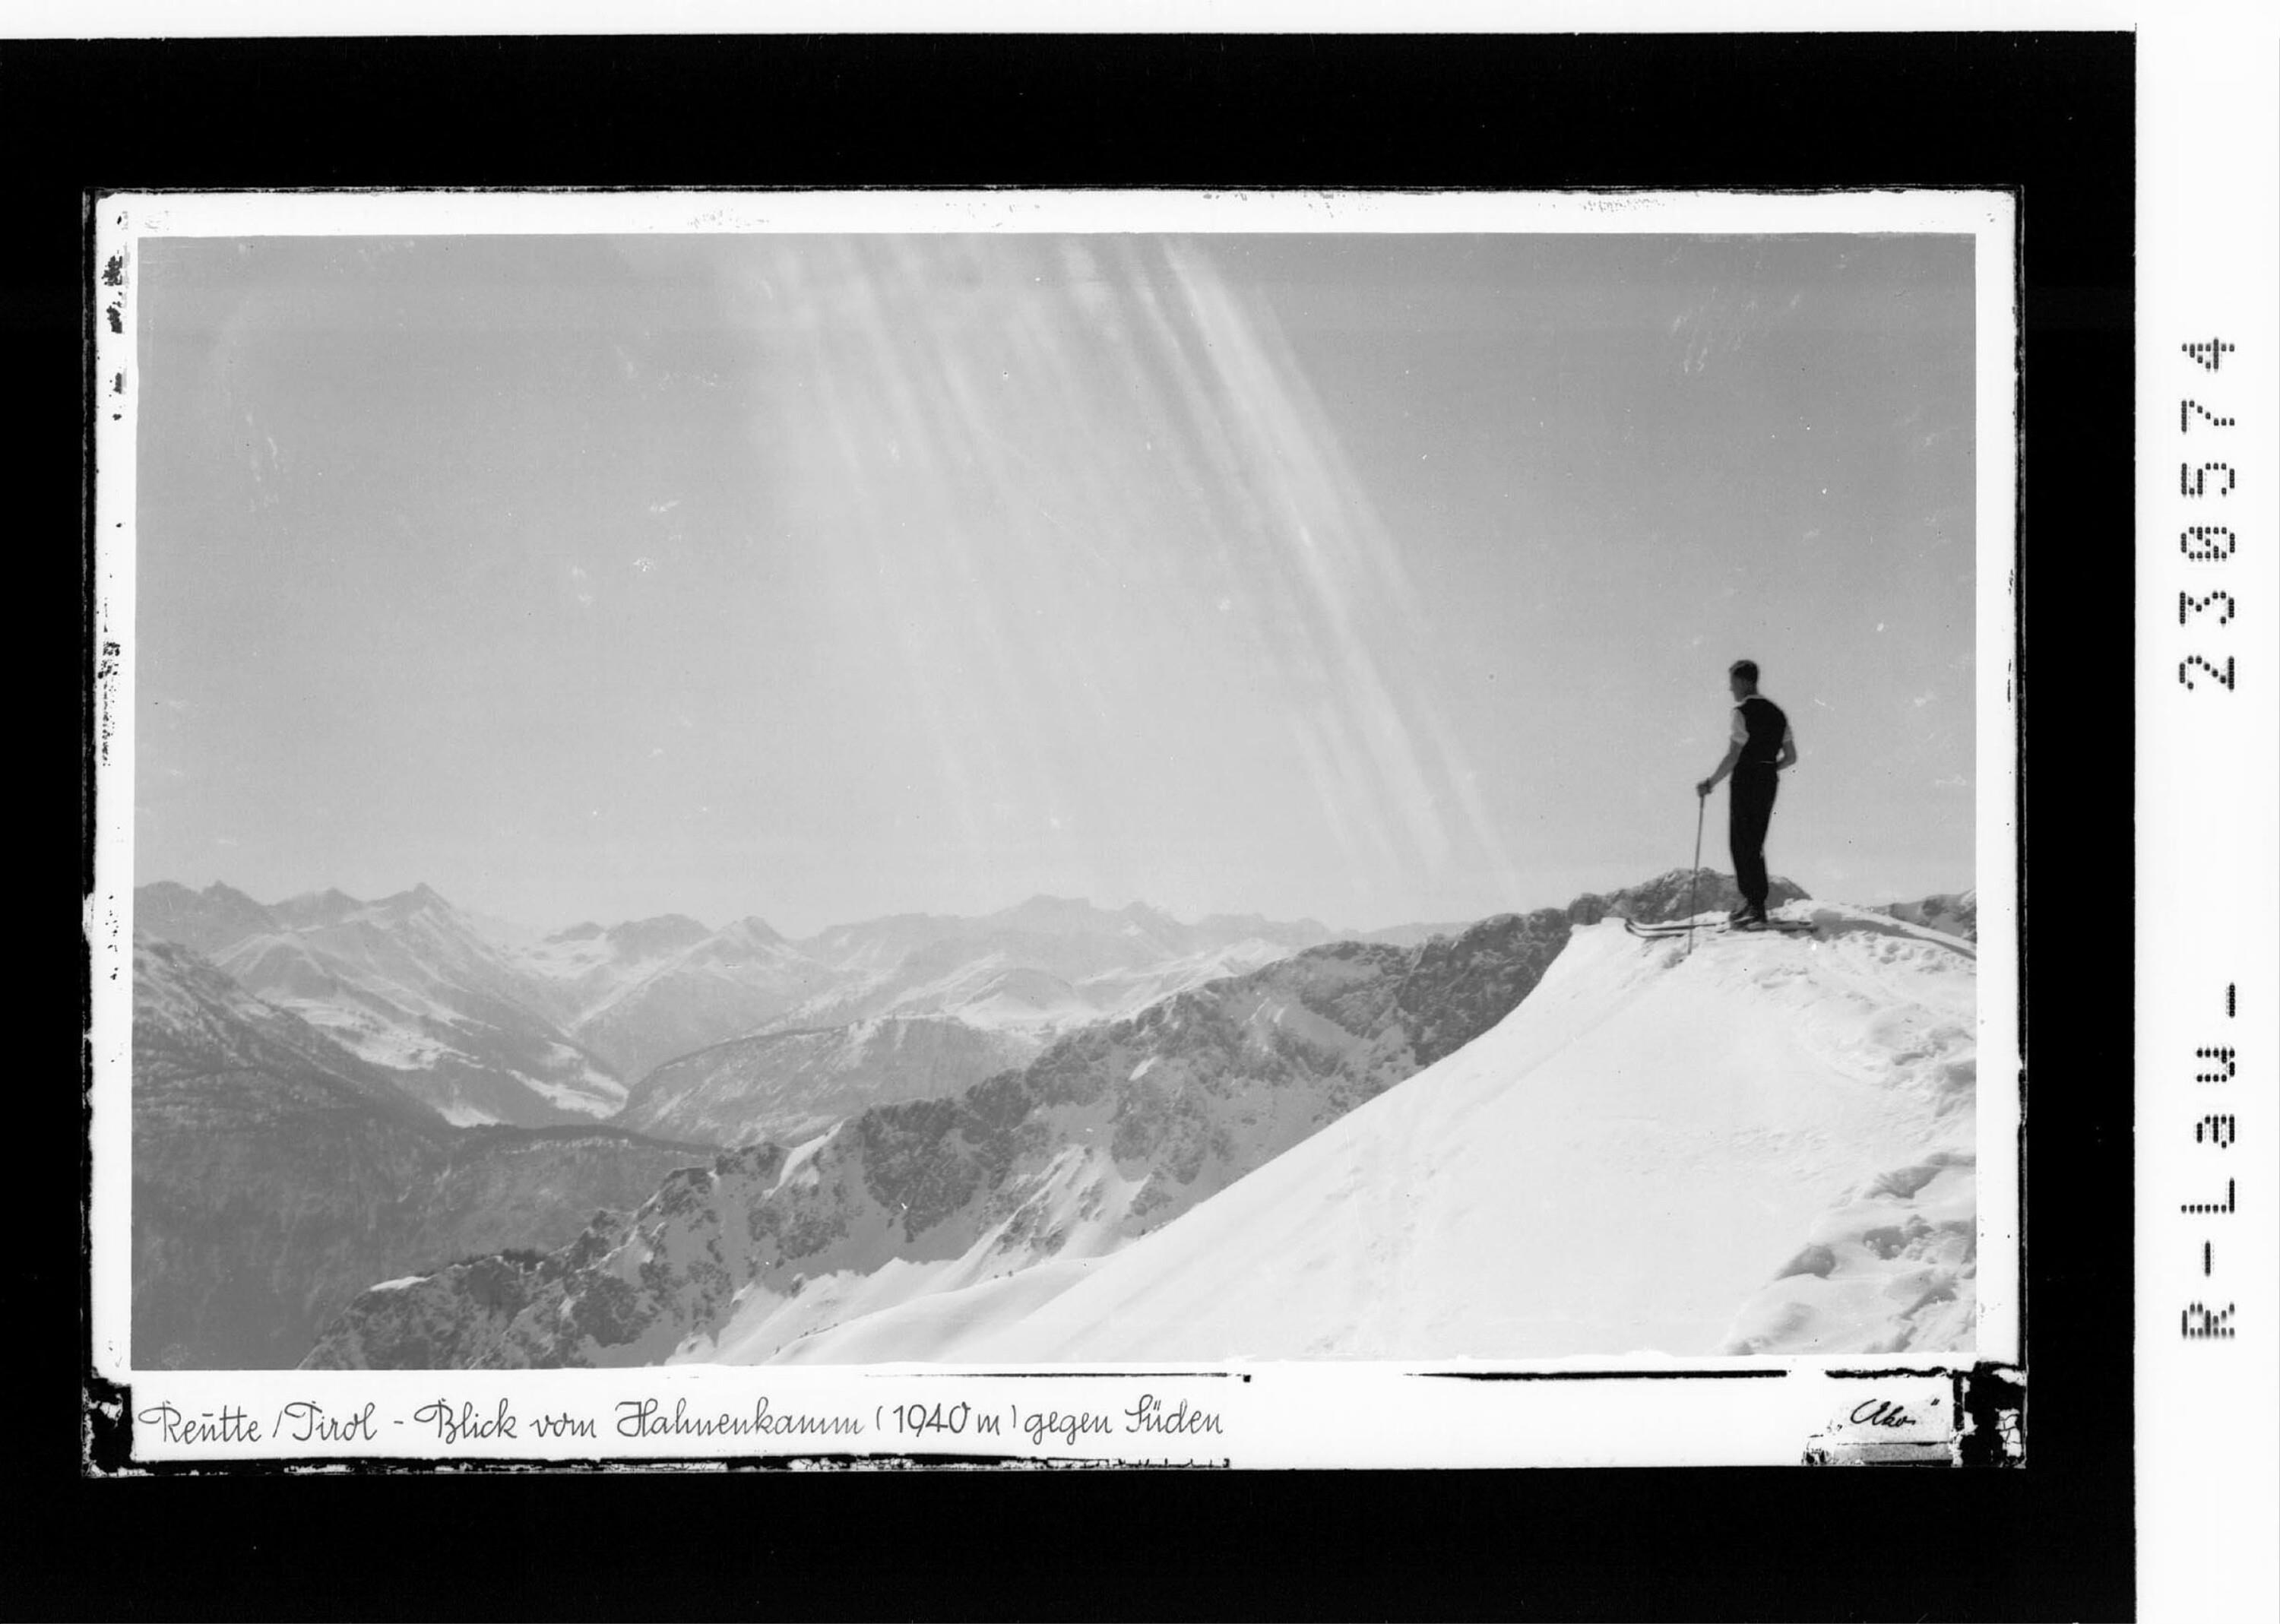 Reutte / Tirol - Blick vom Hahnenkamm ( 1940 m ) gegen Süden></div>


    <hr>
    <div class=